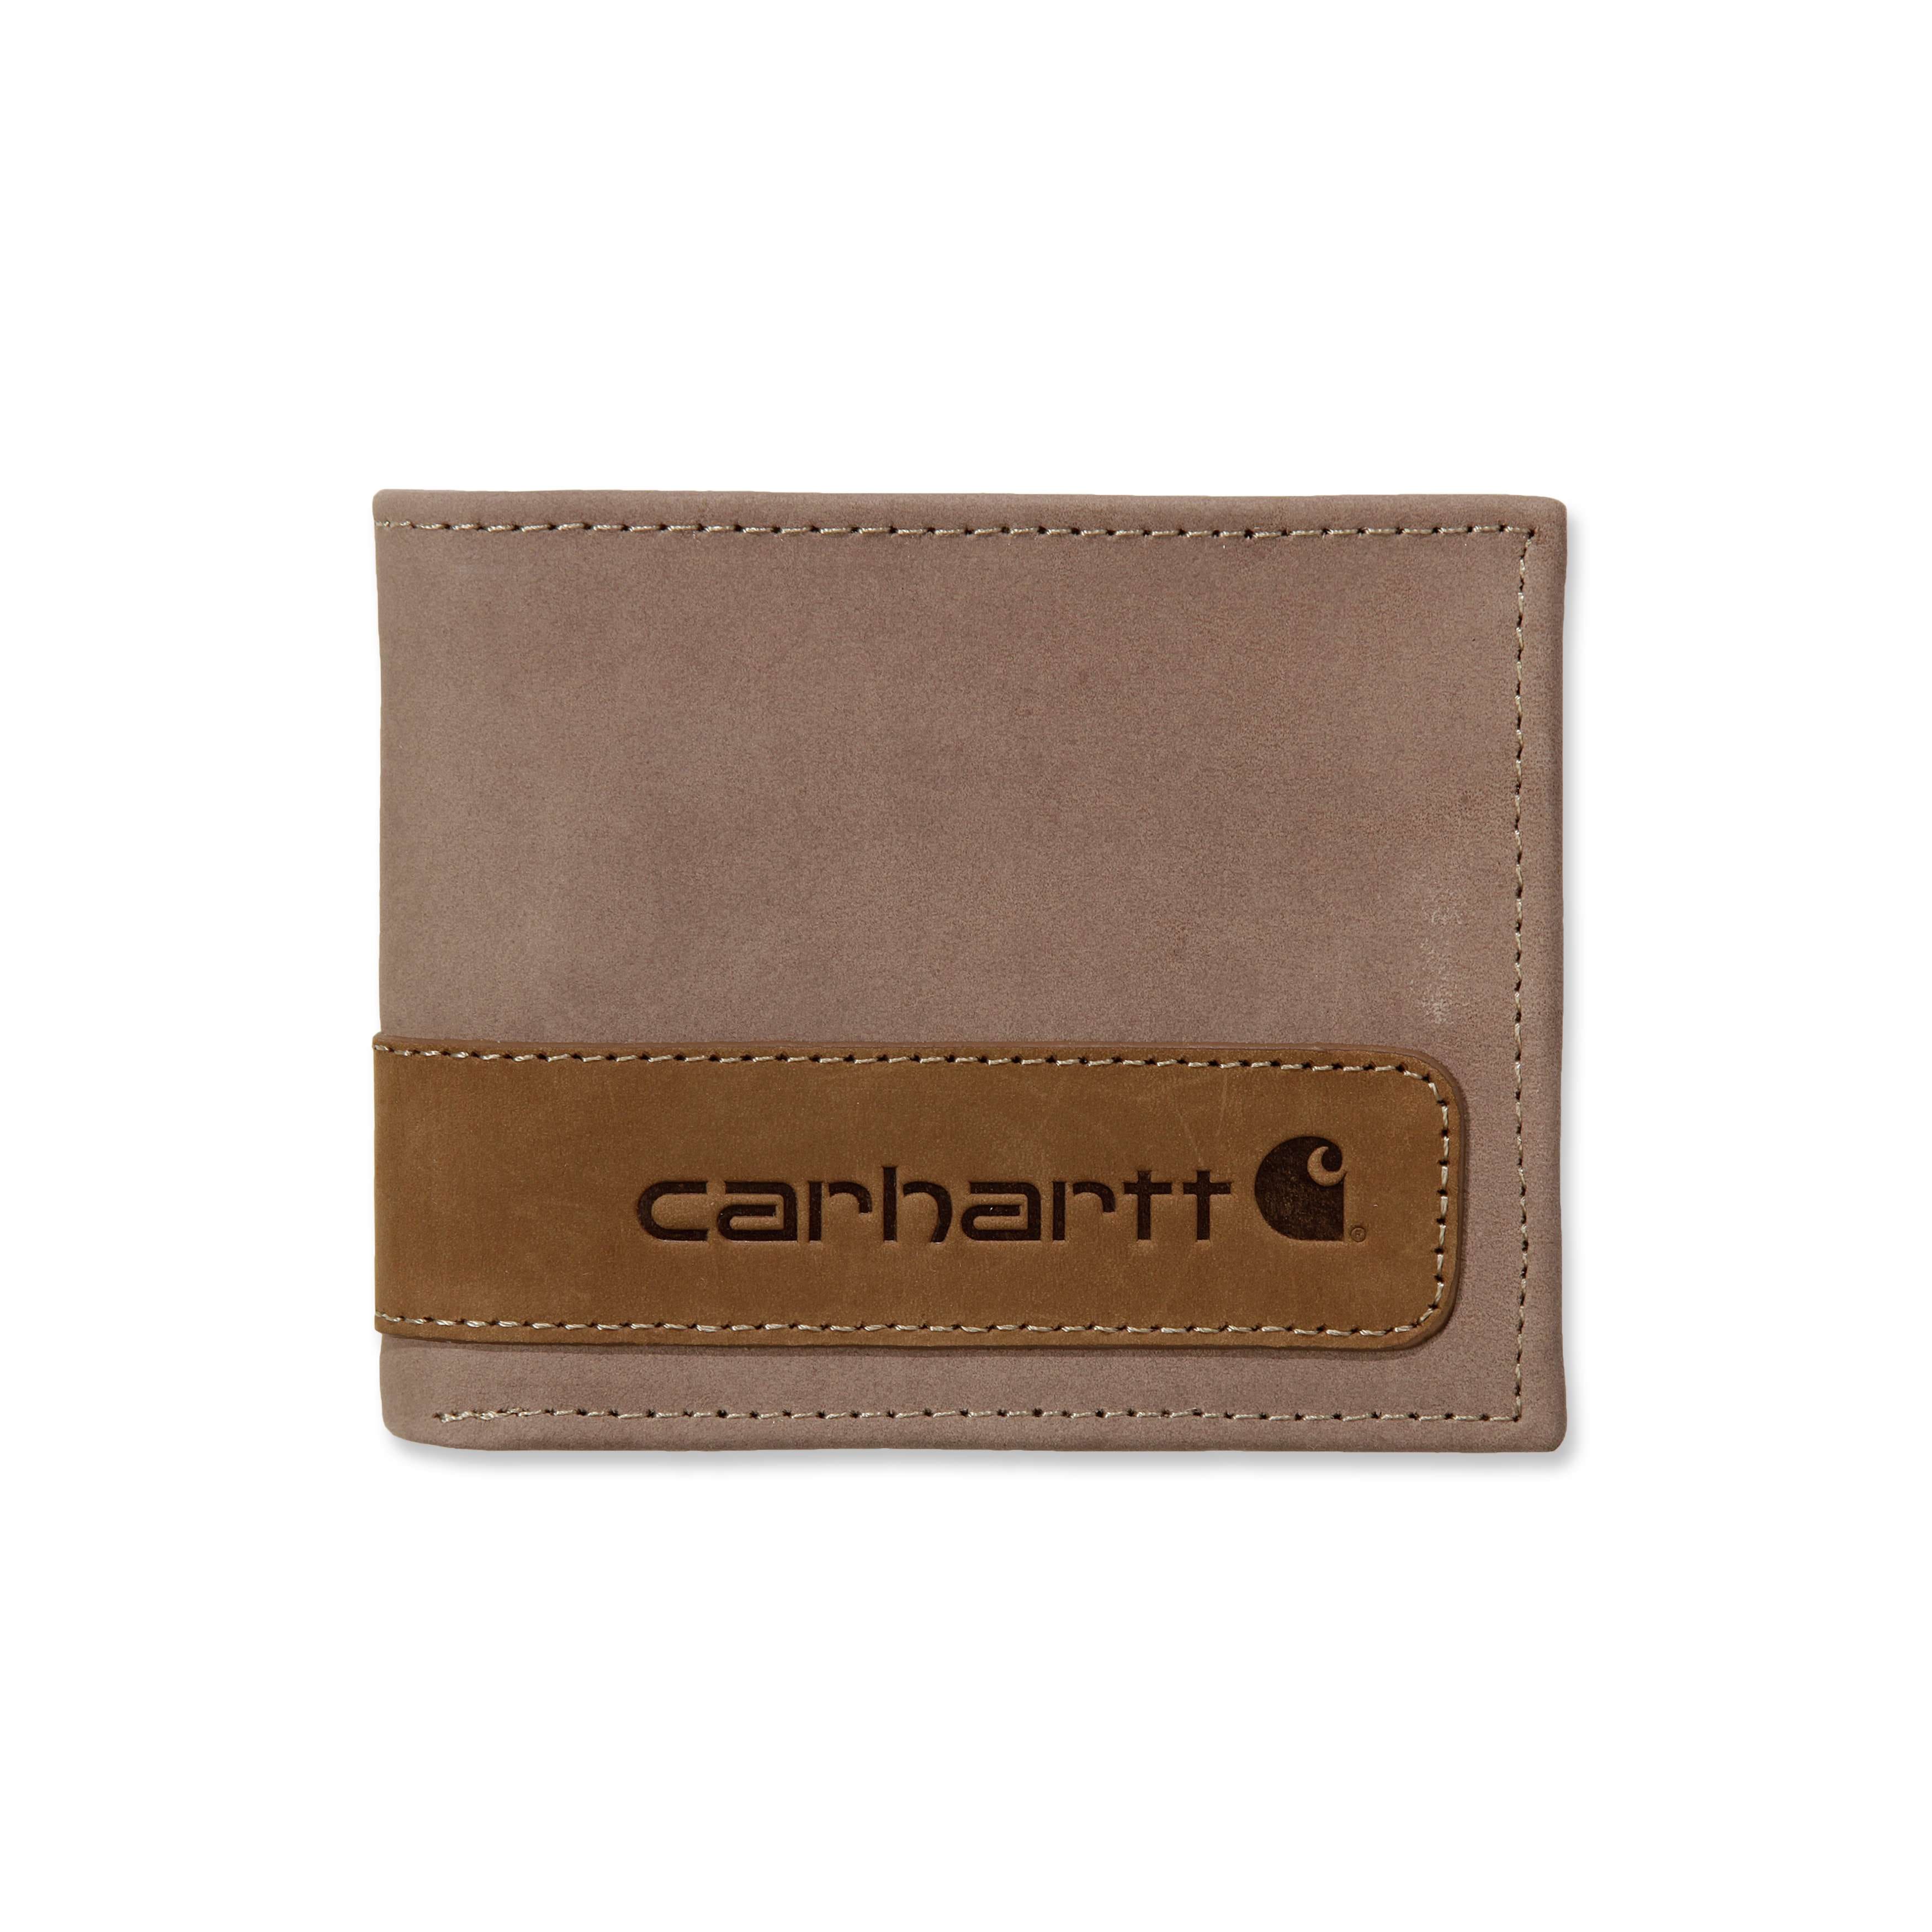 Supreme Wallet, Carhartt Wallet, Palace Wallet (Pre-order 2-3week